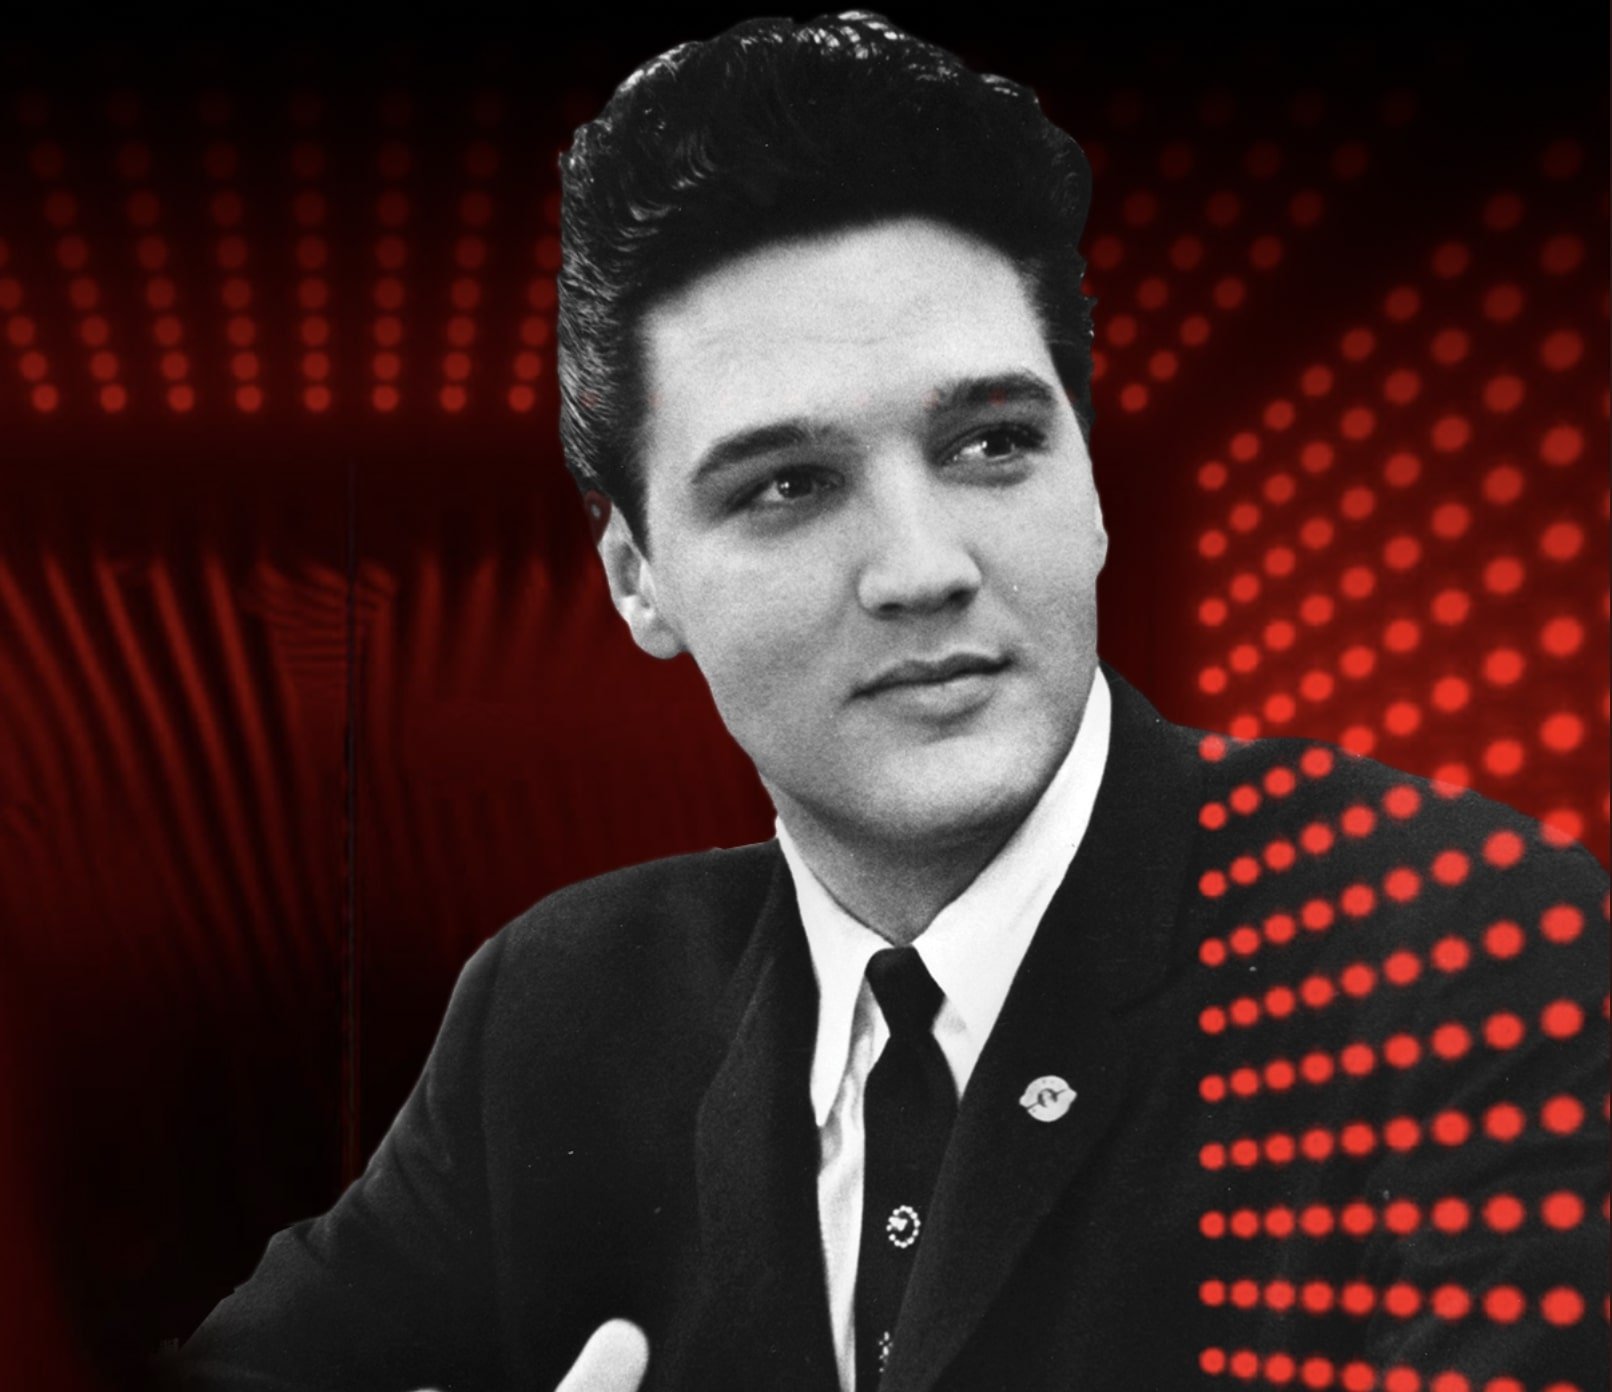 Elvis Presley in a black suit